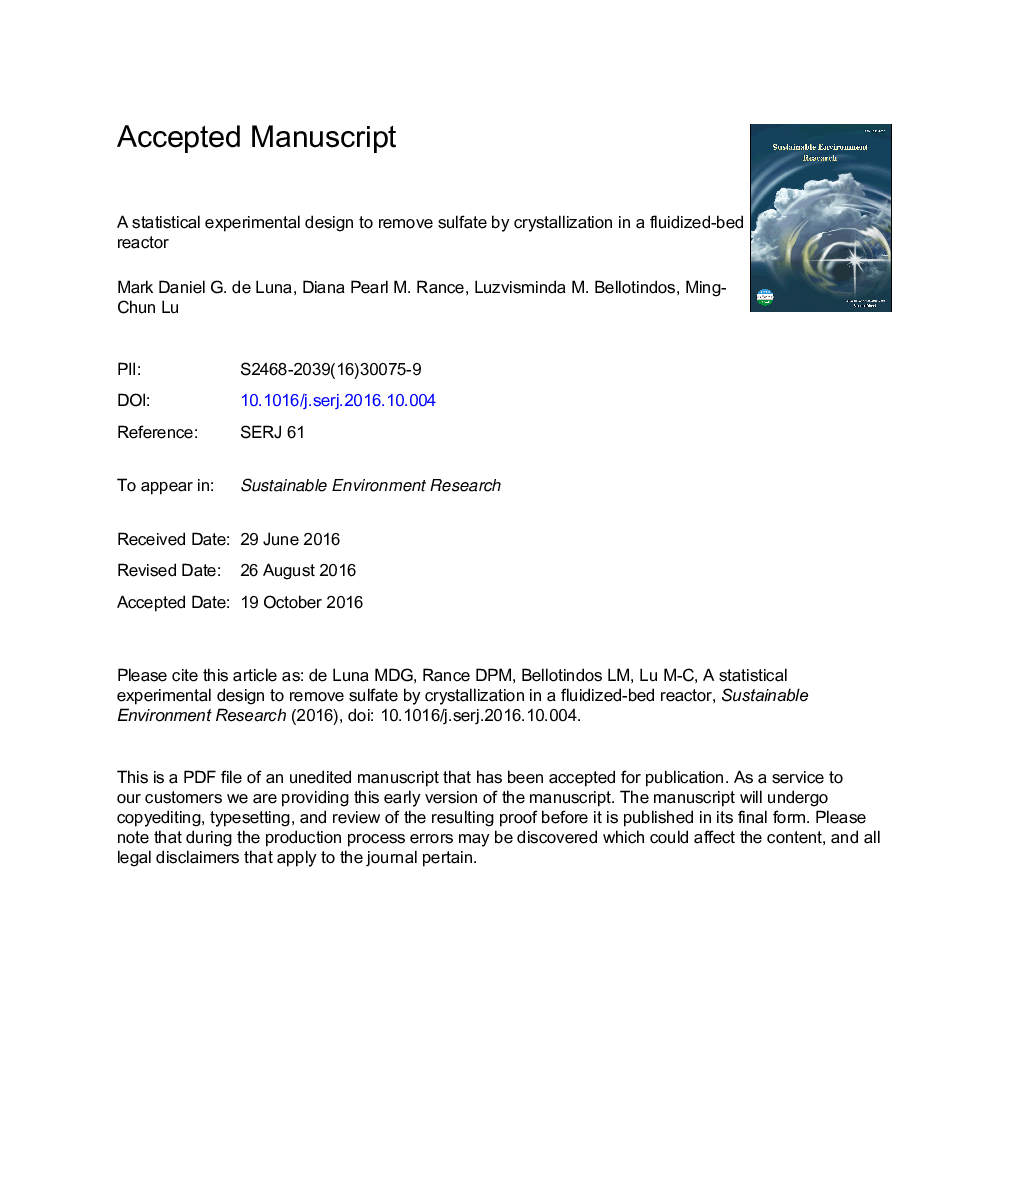 یک طرح آزمایشی آماری برای حذف سولفات توسط کریستالیزاسیون در یک رآکتور بستر سیال 